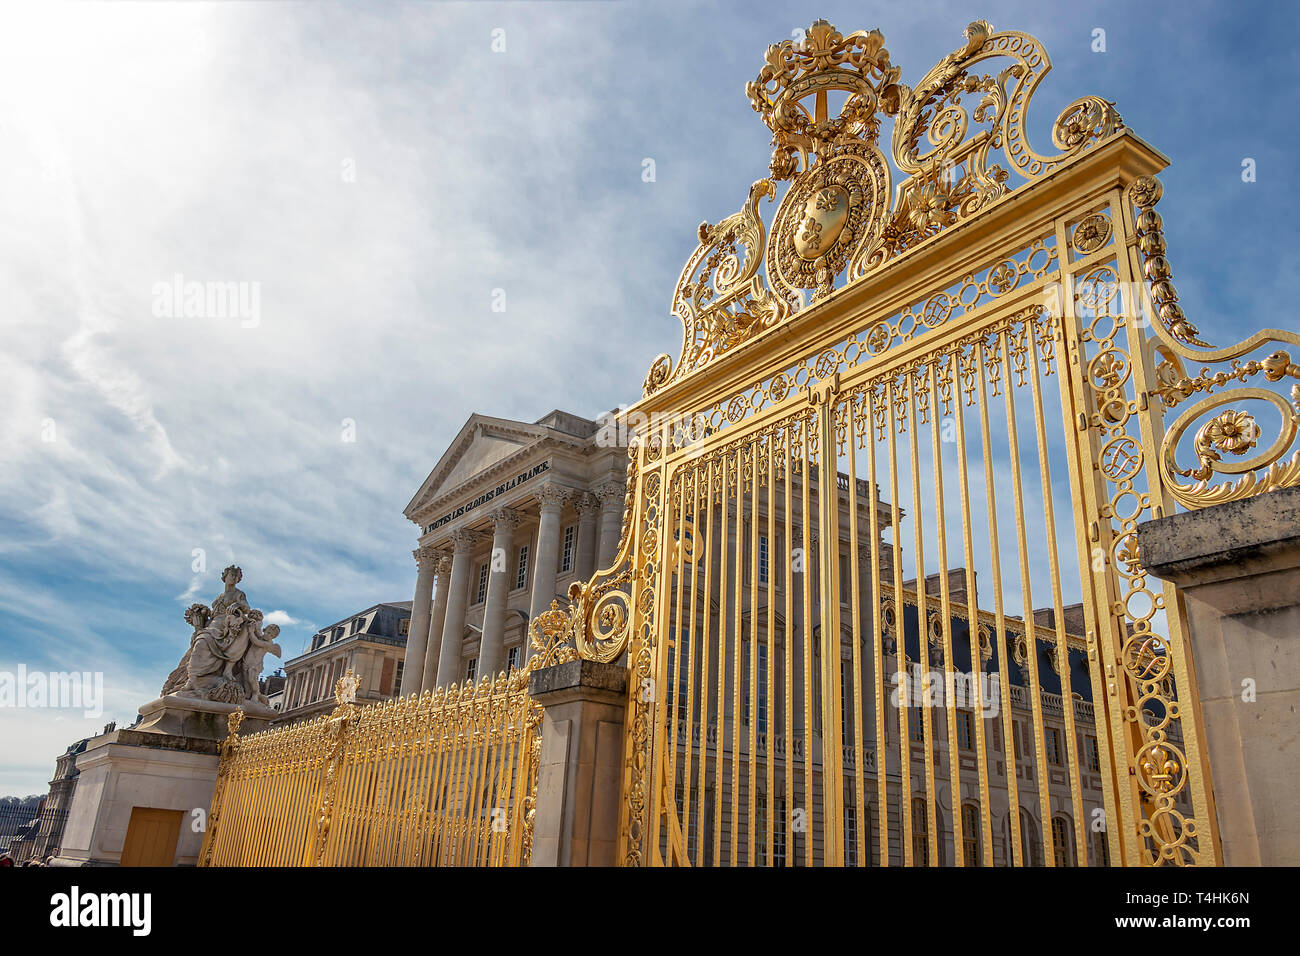 Vue perspective de la grande porte d'or et de l'extérieur clôture à façade de Palais de Versailles, Paris, France Banque D'Images